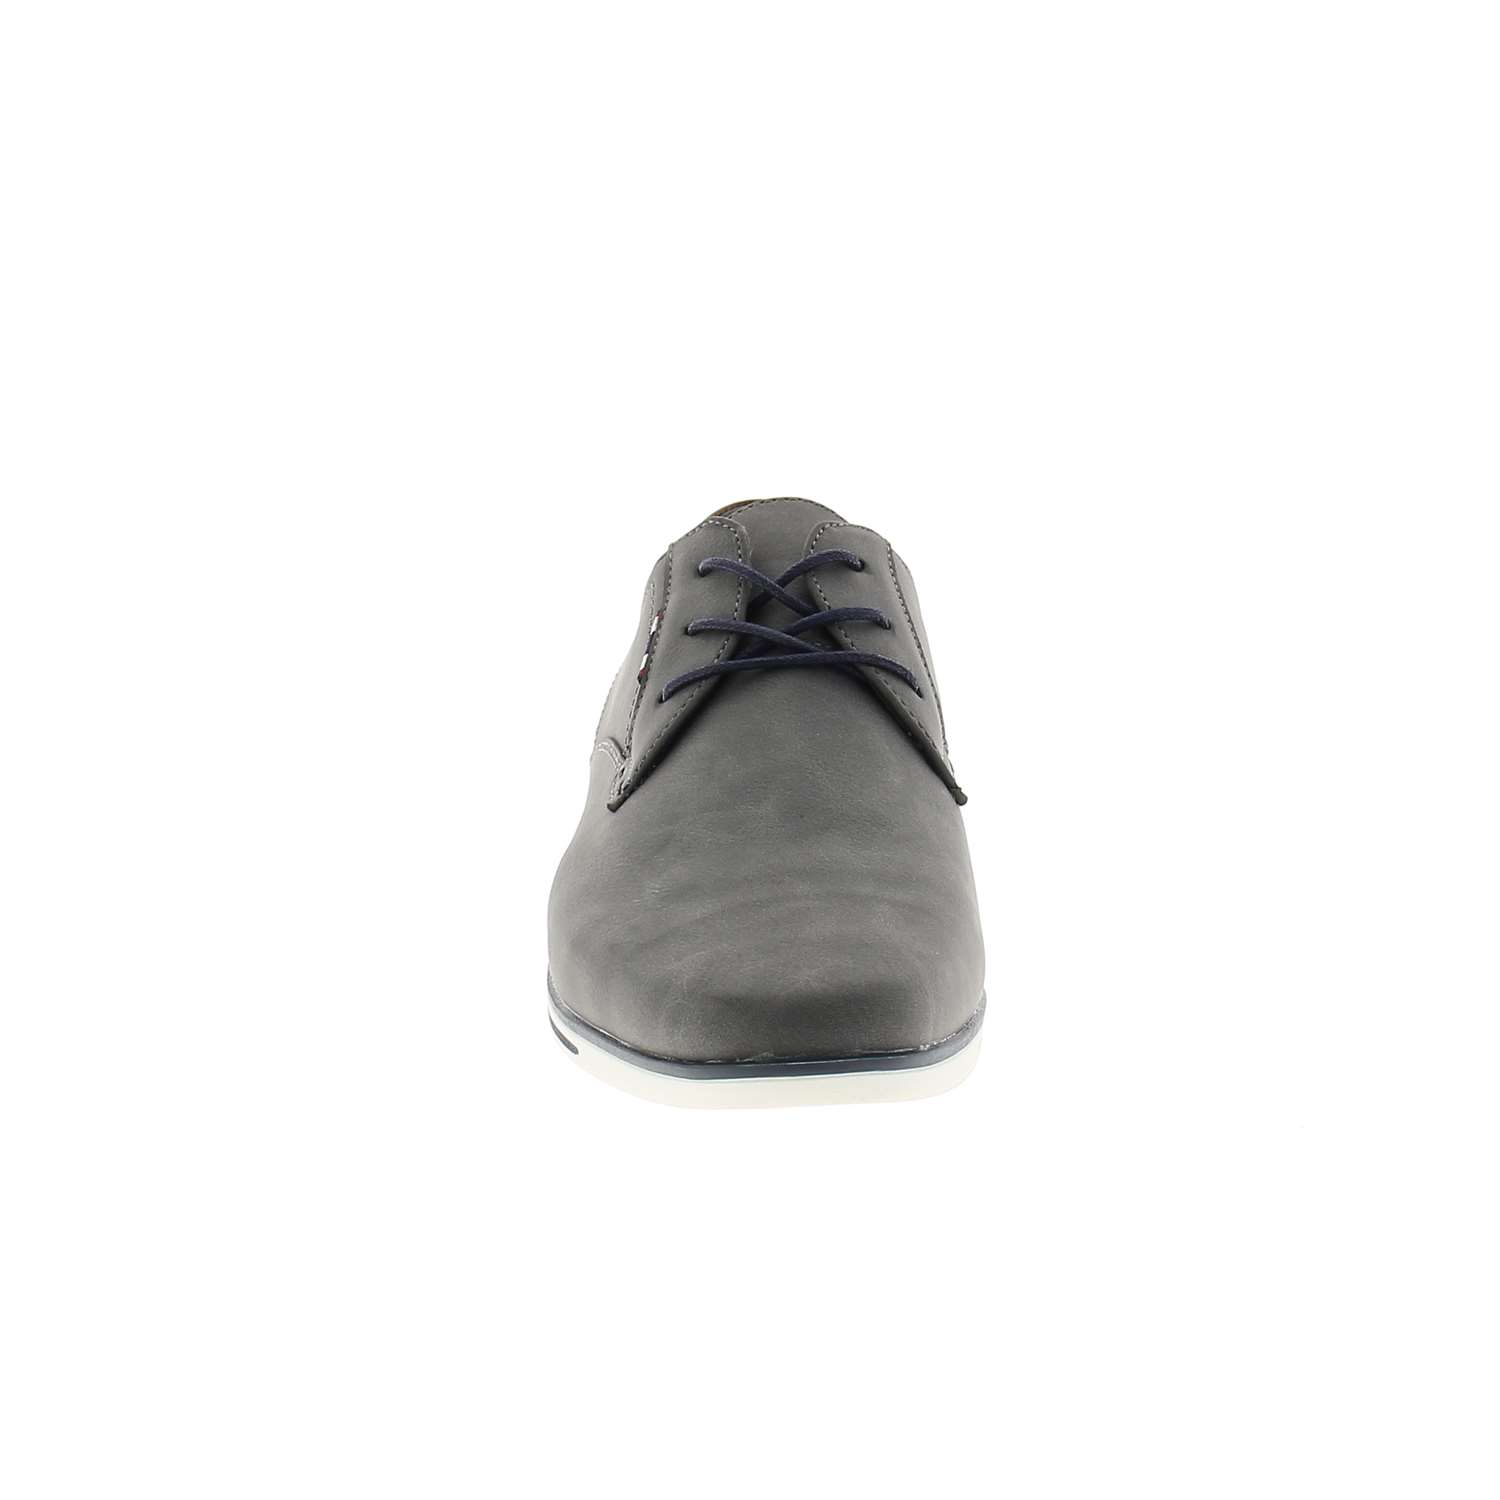 03 - KERTUR     - XAPI - Chaussures à lacets - Textile